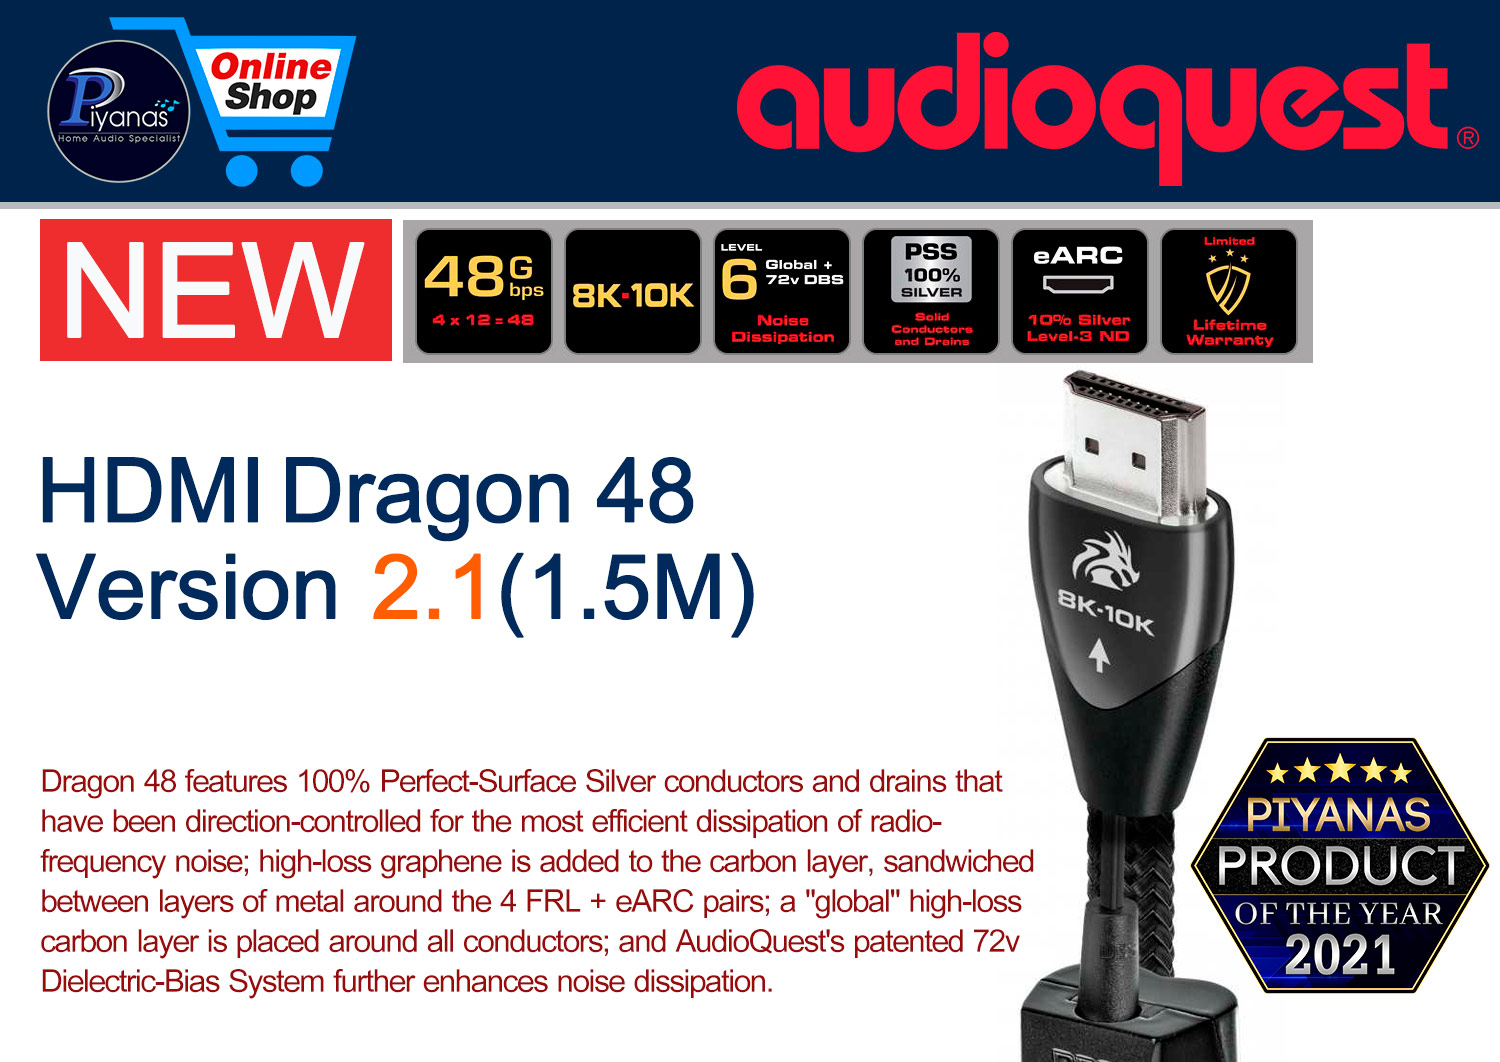 HDMI-Dragon 48 Version 2.1 (1.5M)